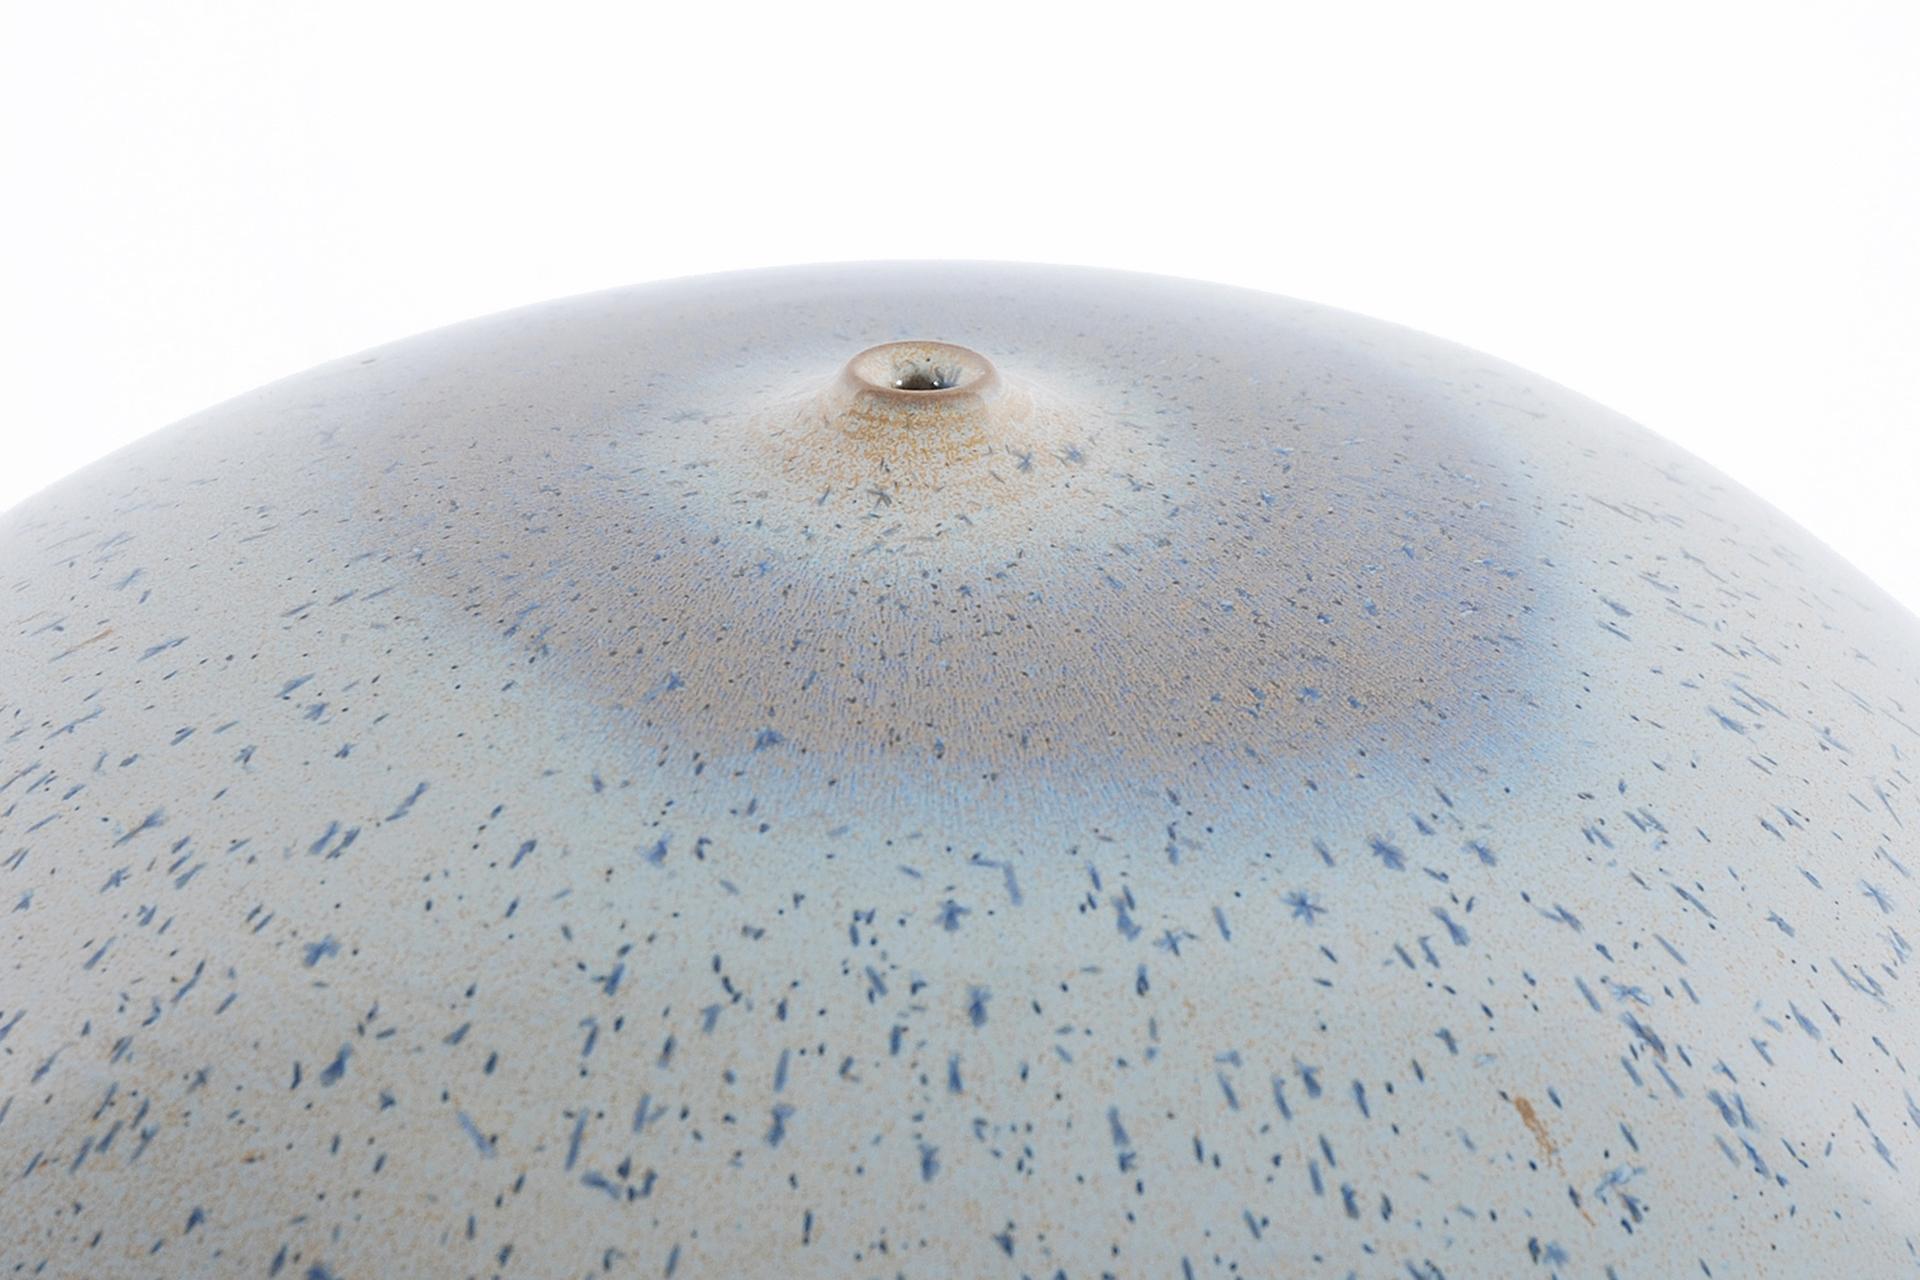 Belgian Antonio Lampecco, Set of 3 Spherical Ceramics For Sale